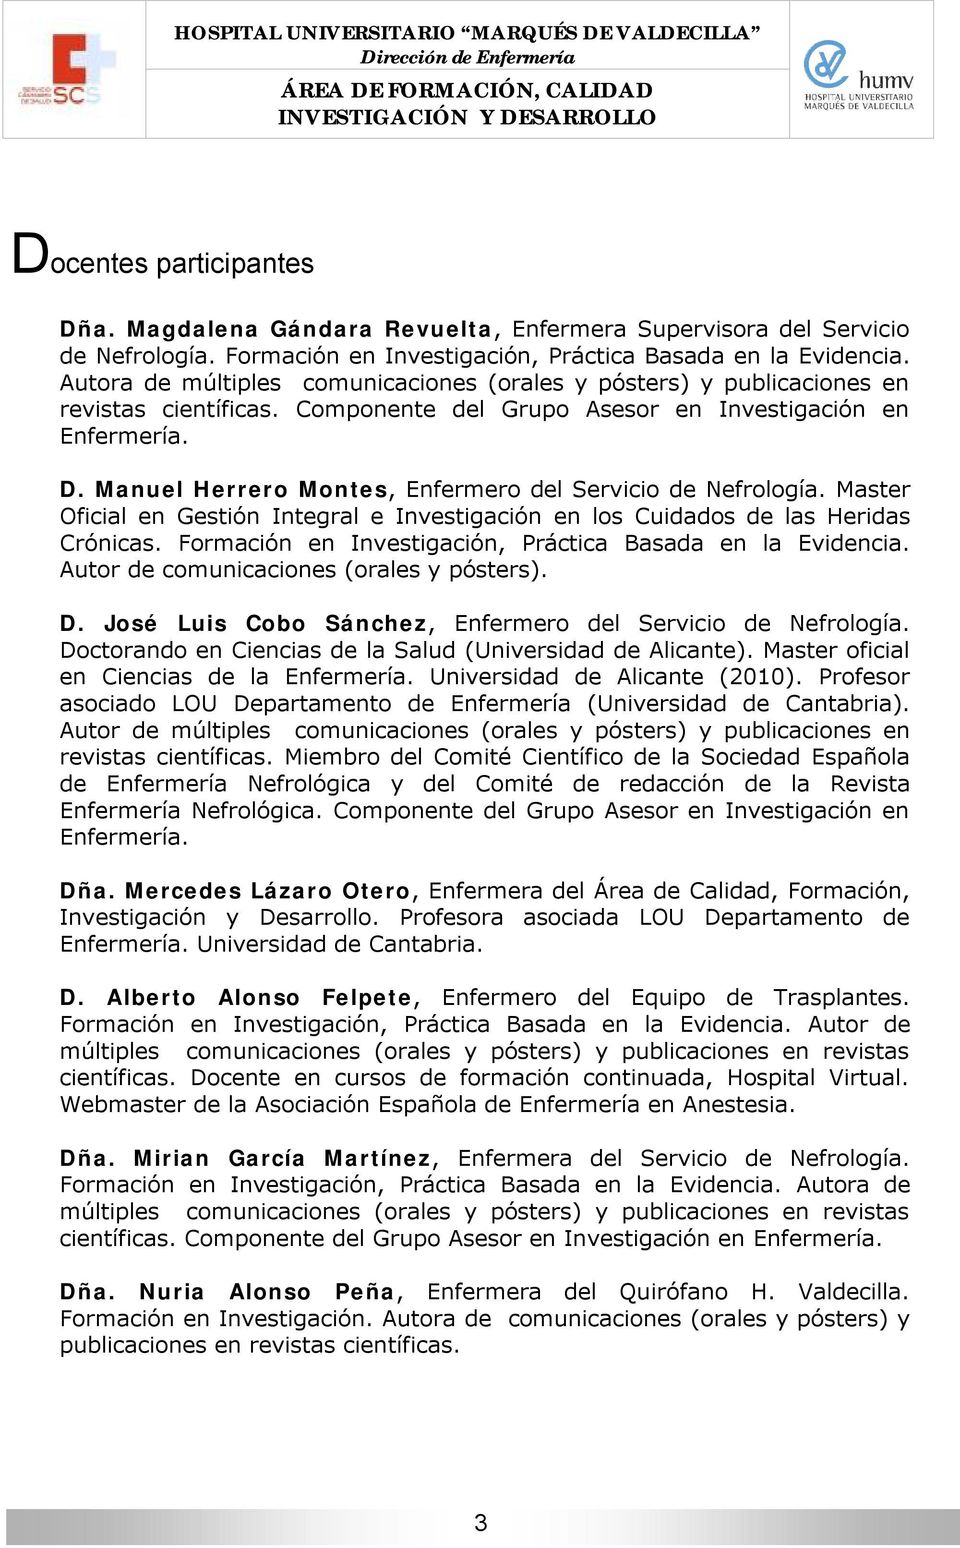 Manuel Herrero Montes, Enfermero del Servicio de Nefrología. Master Oficial en Gestión Integral e Investigación en los Cuidados de las Heridas Crónicas.